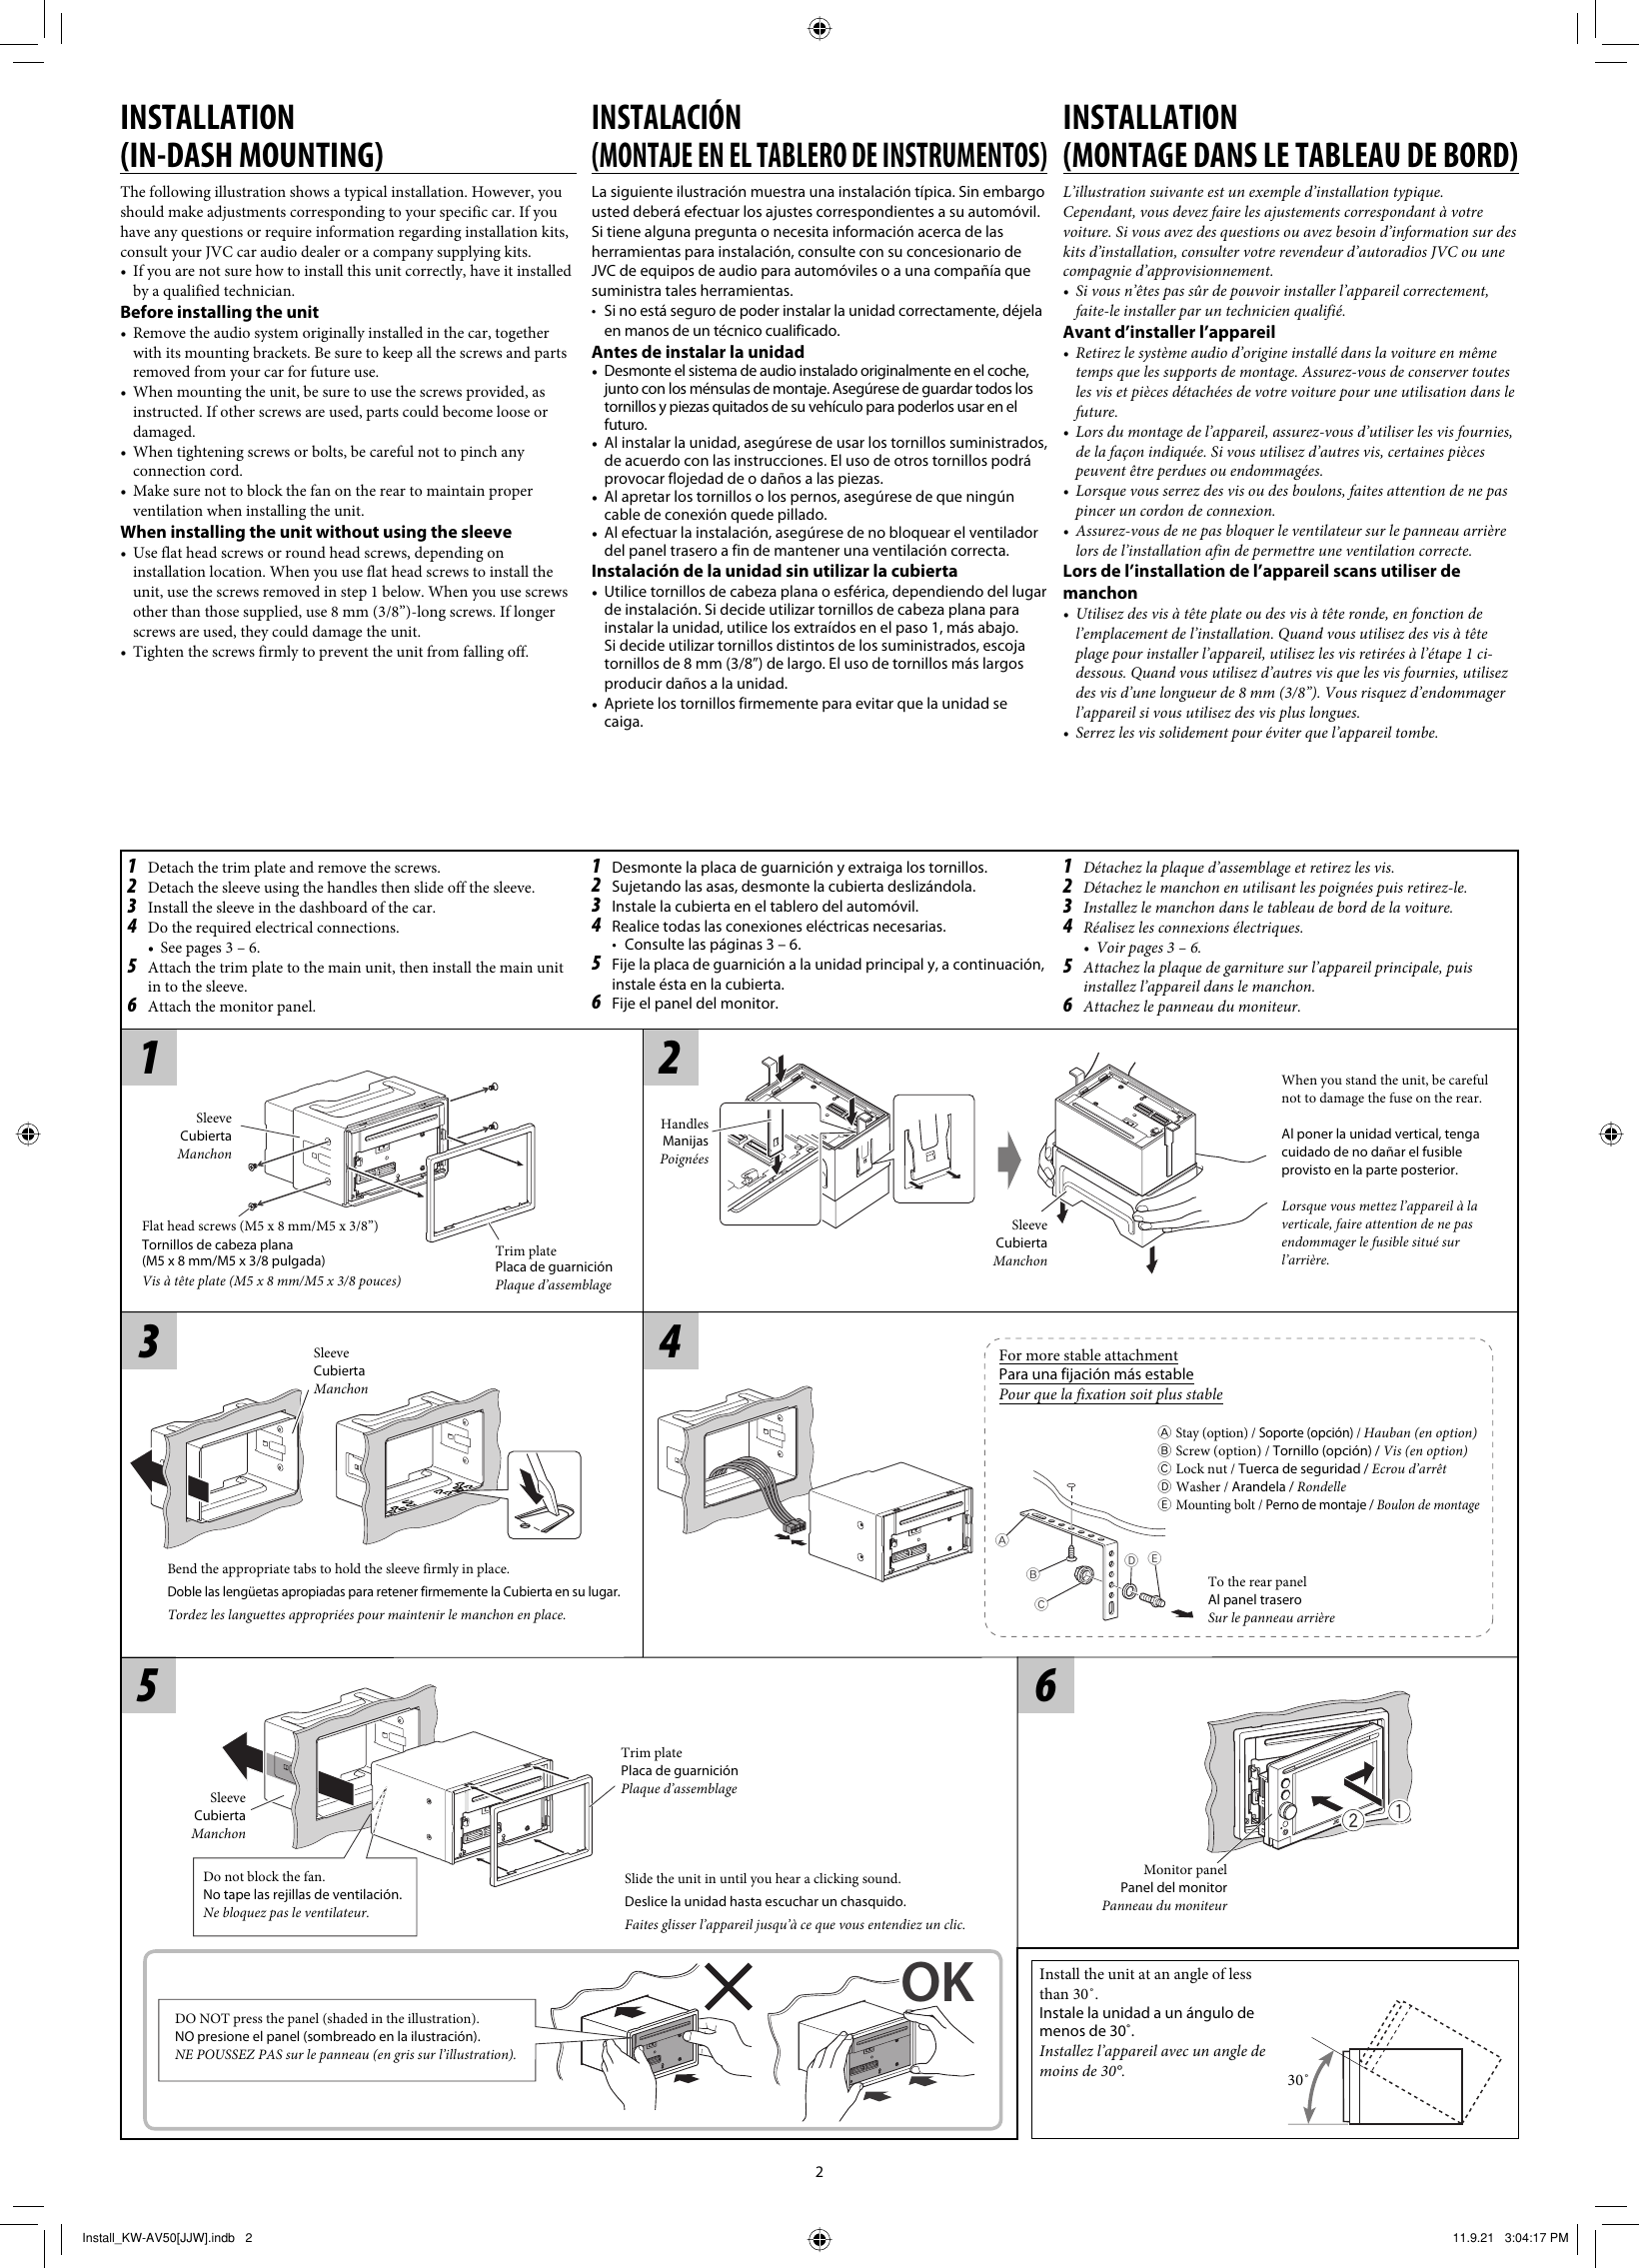 Page 2 of 6 - JVC KW-AV50J KW-AV58/KW-AV50[J/JW] User Manual KW-AV50J, KW-AV58J LVT2285-002A